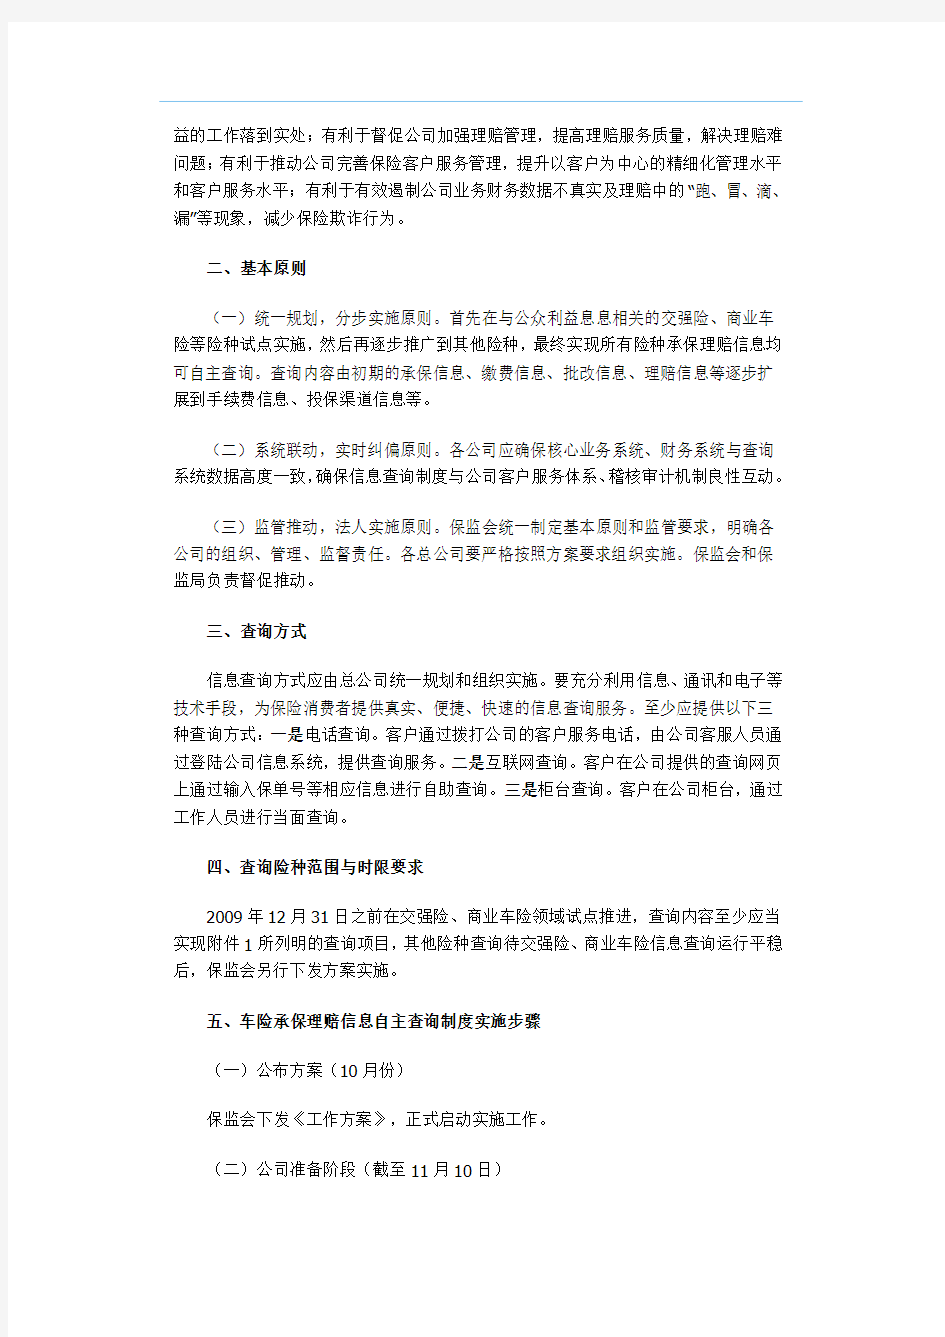 中国保监会关于建立财产保险承保理赔信息客户自主查询制度的工作方案